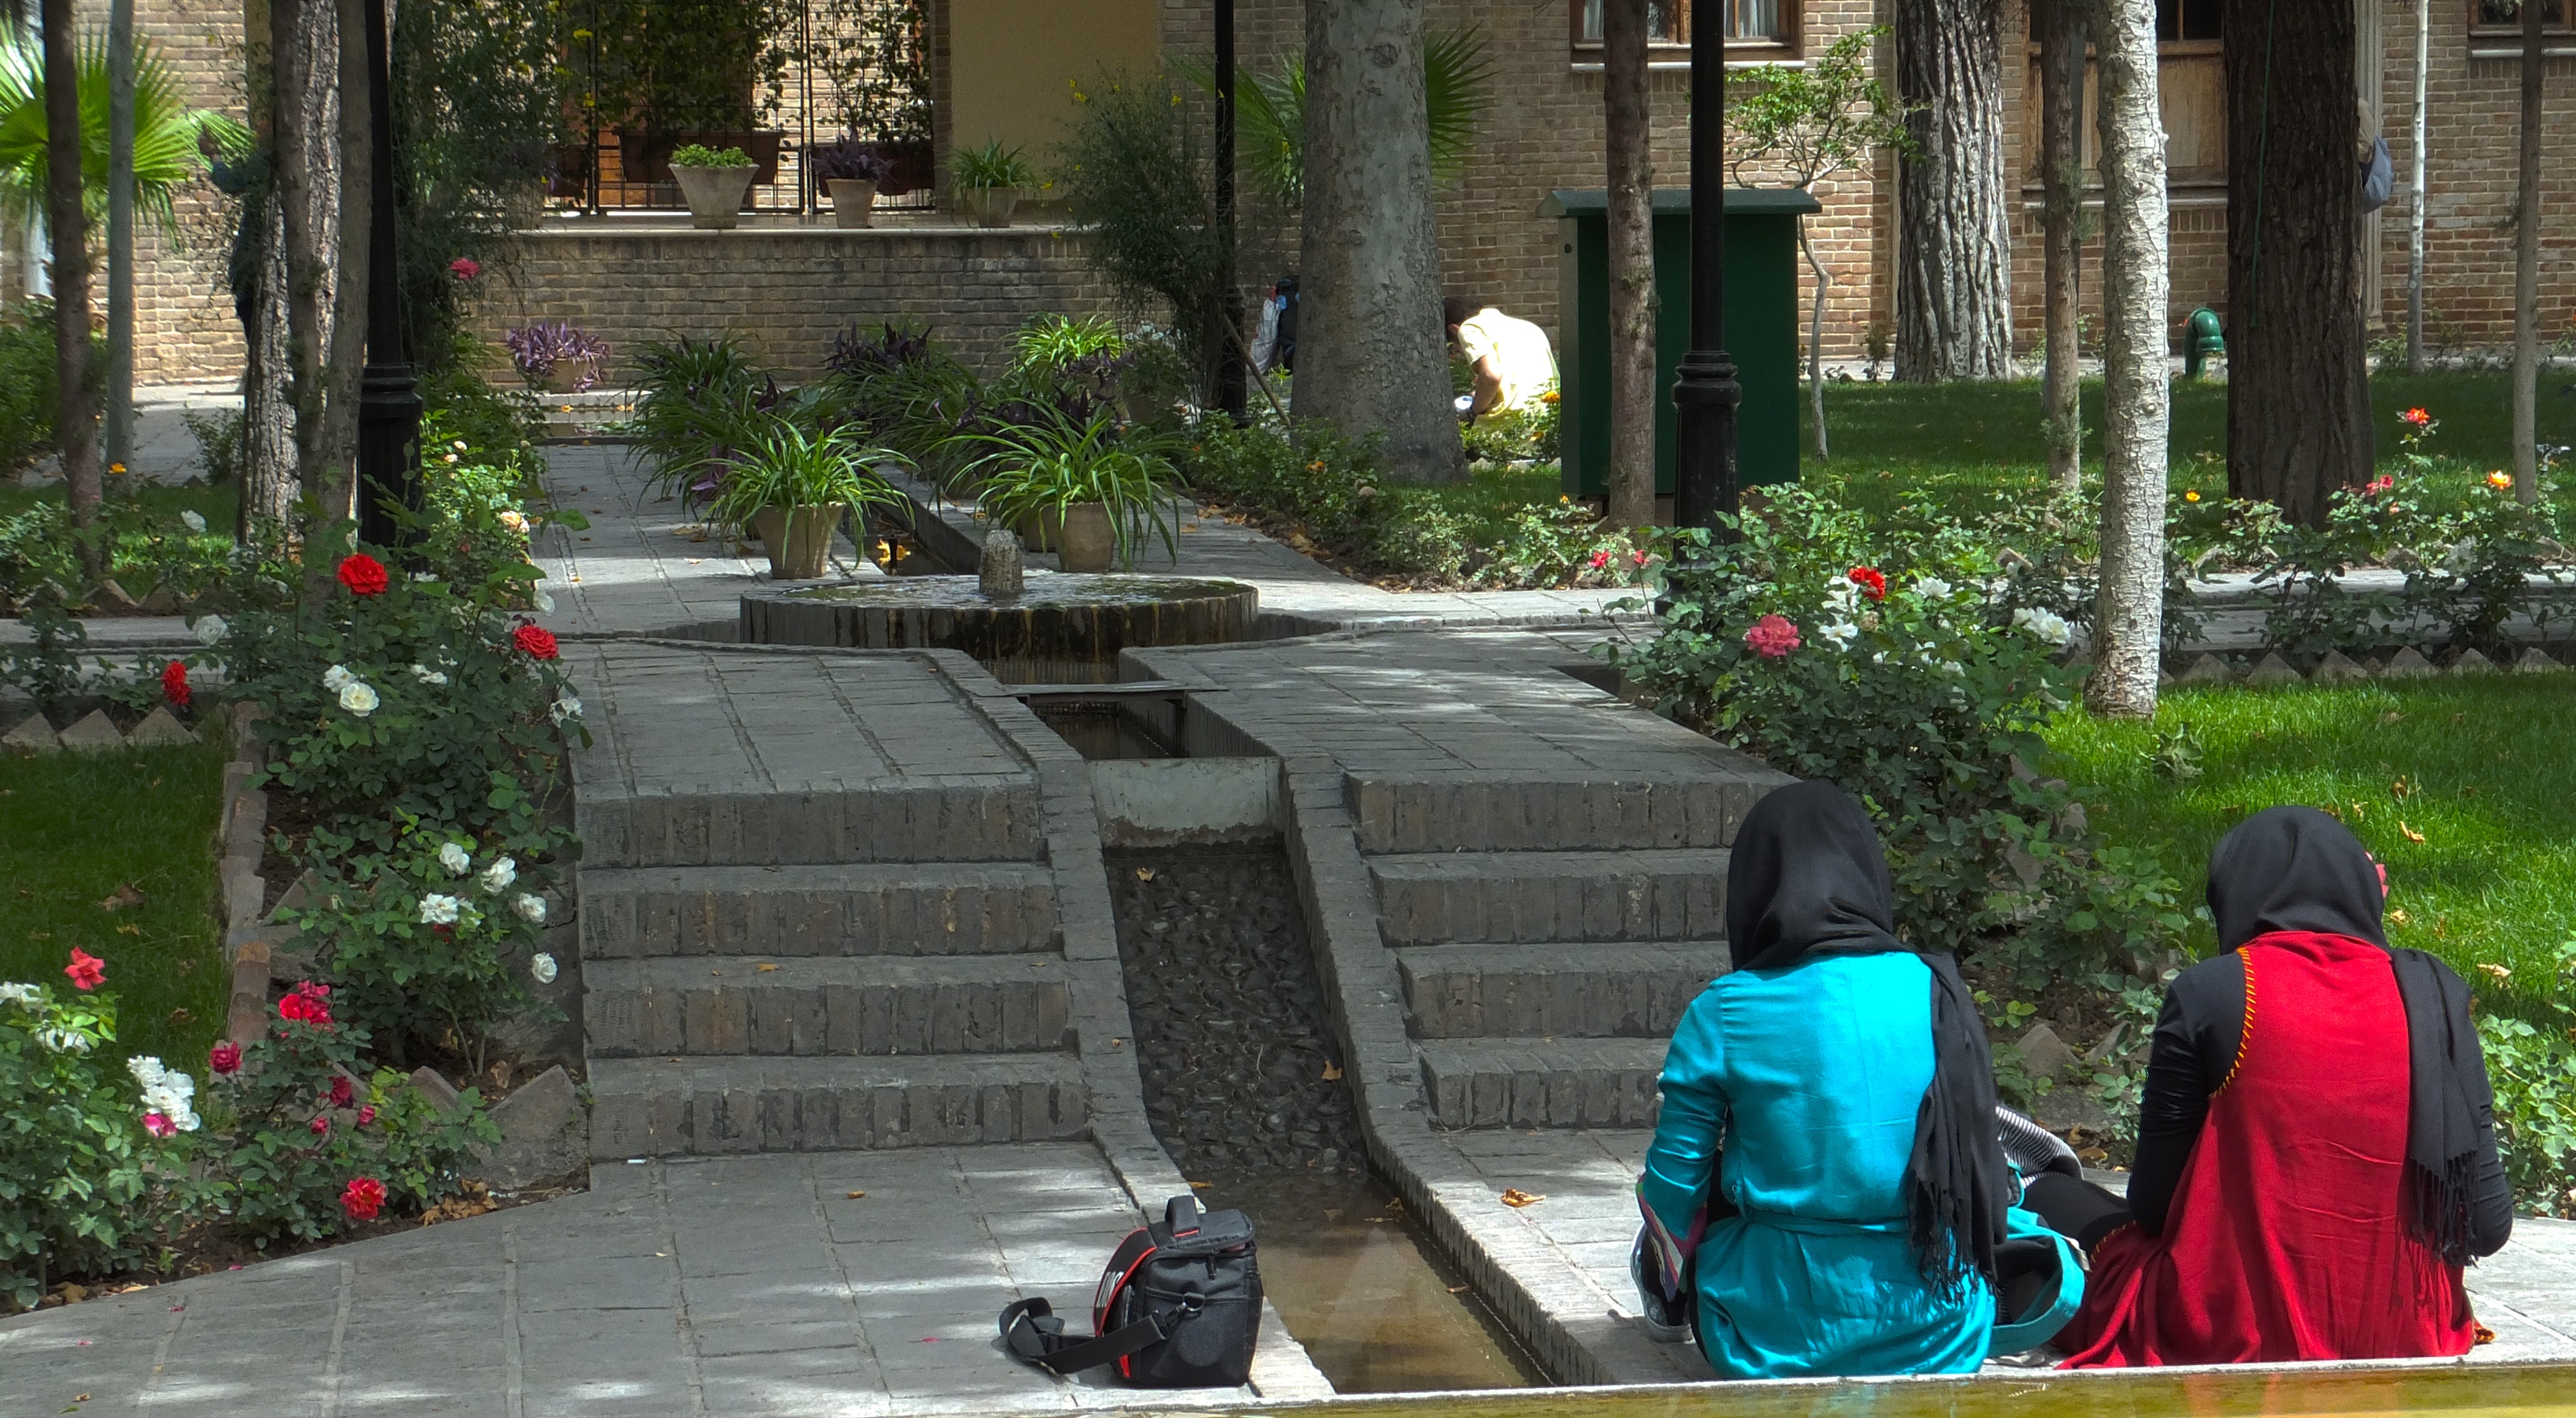 باغ موزه نگارستان از بناهای قدیمی و ارزشمند تهران